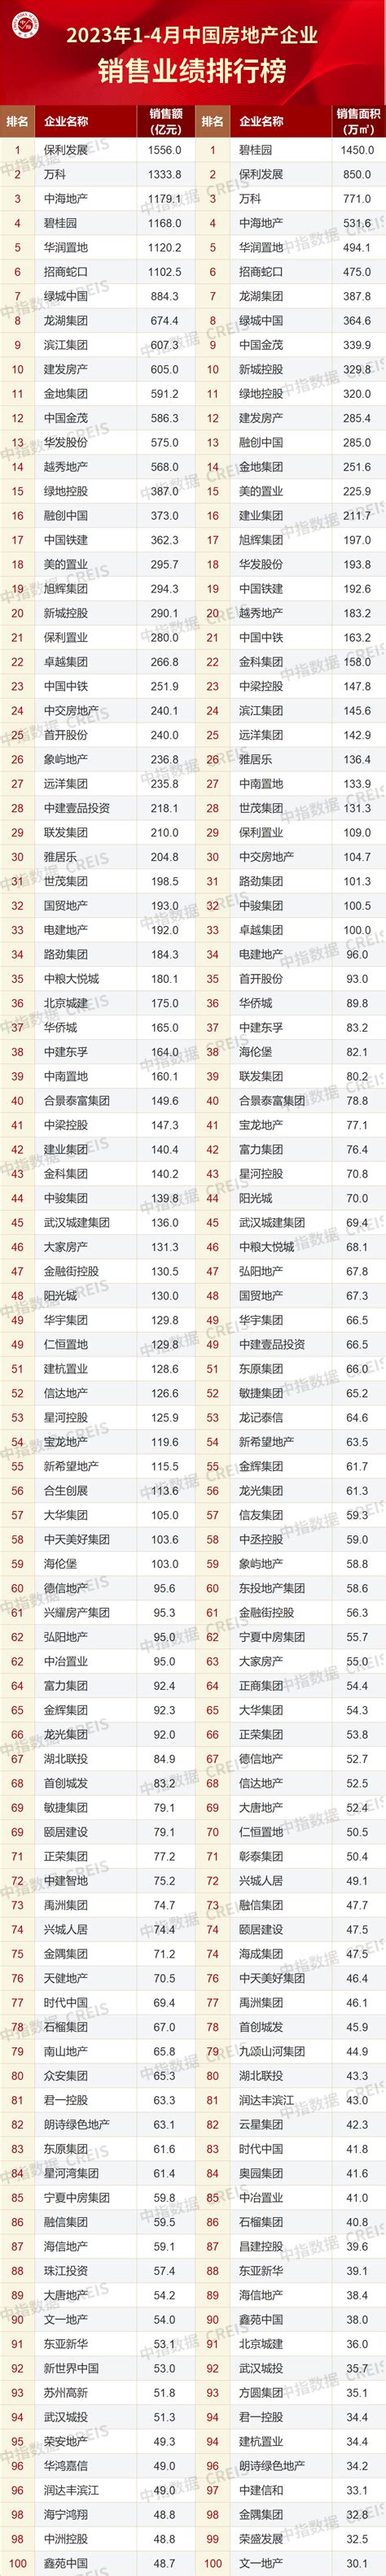 2023年1-3月中国房地产企业销售业绩排行榜_新浪财经_新浪网